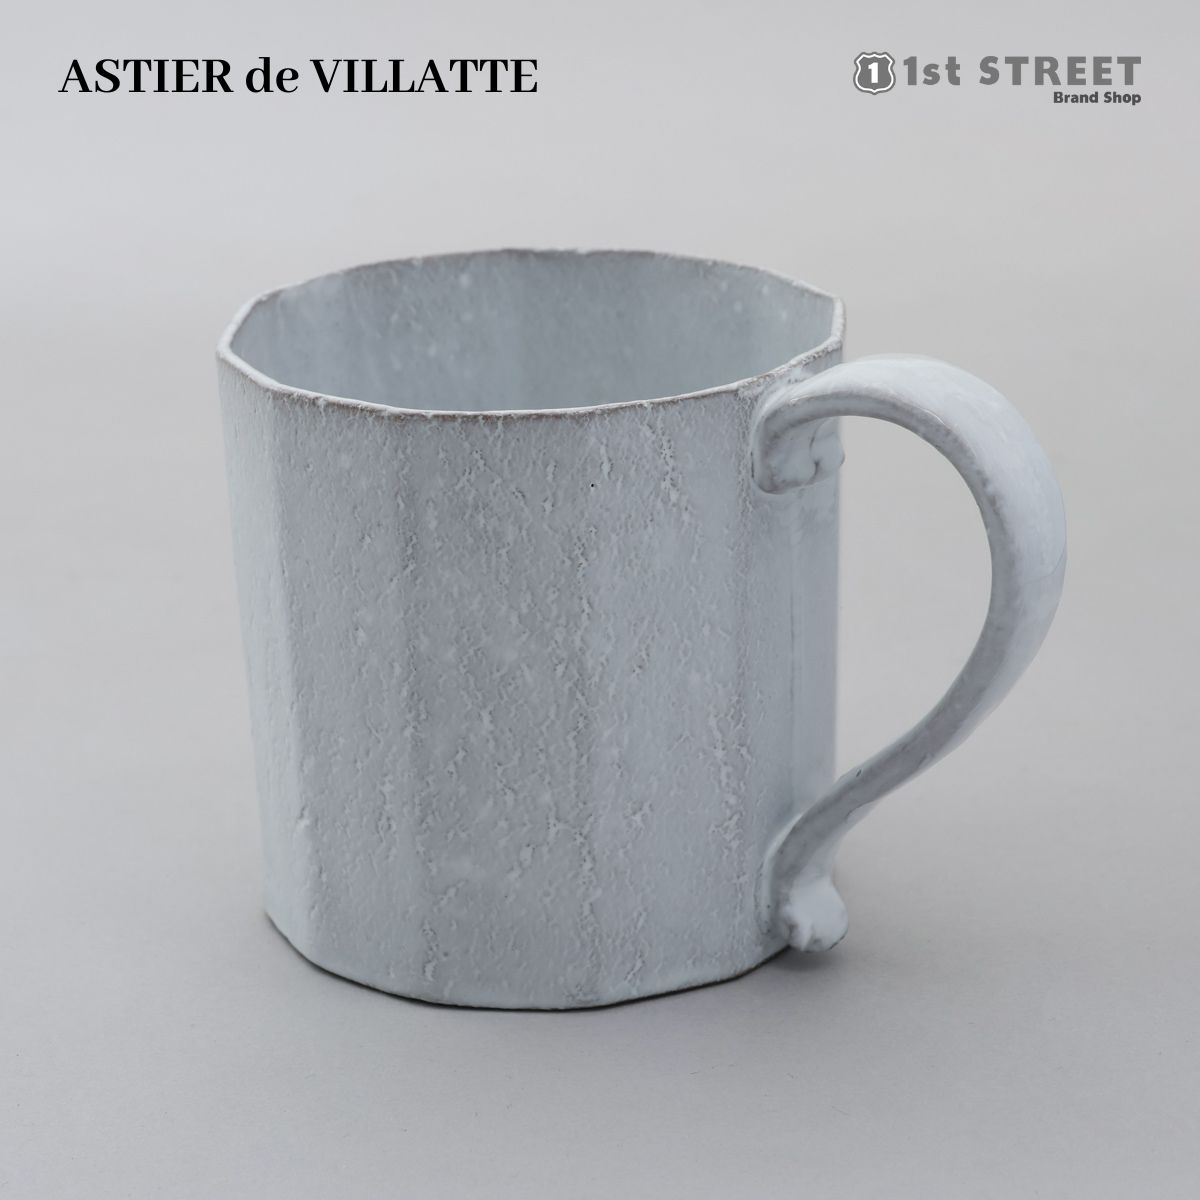 アスティエ・ド・ヴィラット ASTIER de VILLATTE マグカップ コップ コーヒーカップ カップ 食器 洋食器 陶器 おしゃれ ギフト TSSOCT1 OCTAVE